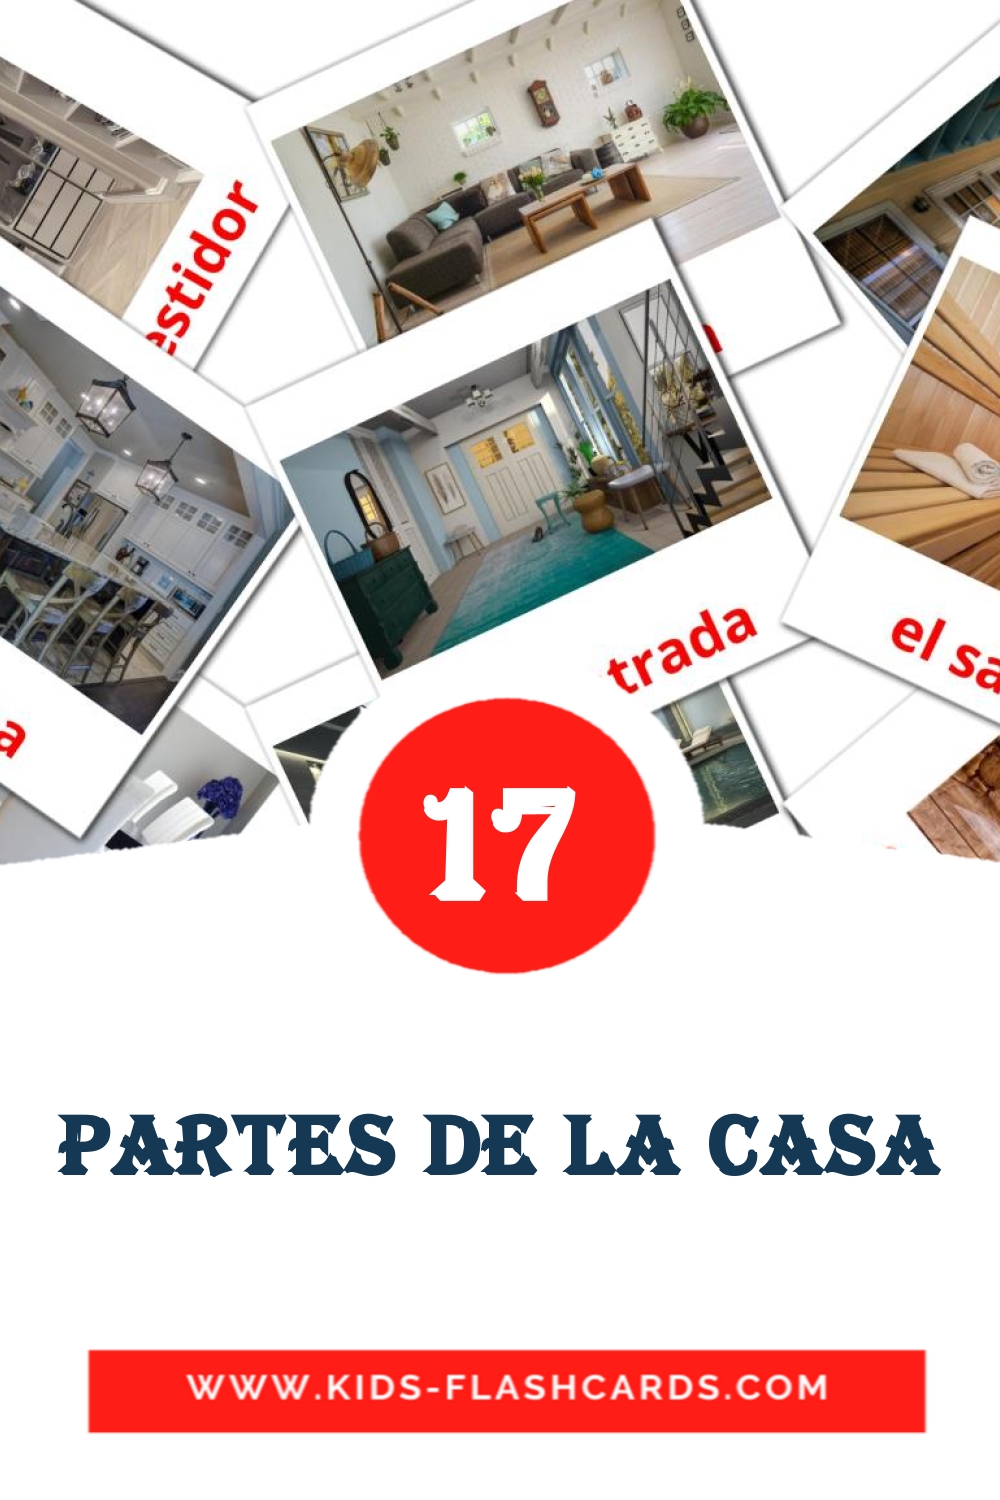 17 carte illustrate di partes de la casa per la scuola materna in amárica